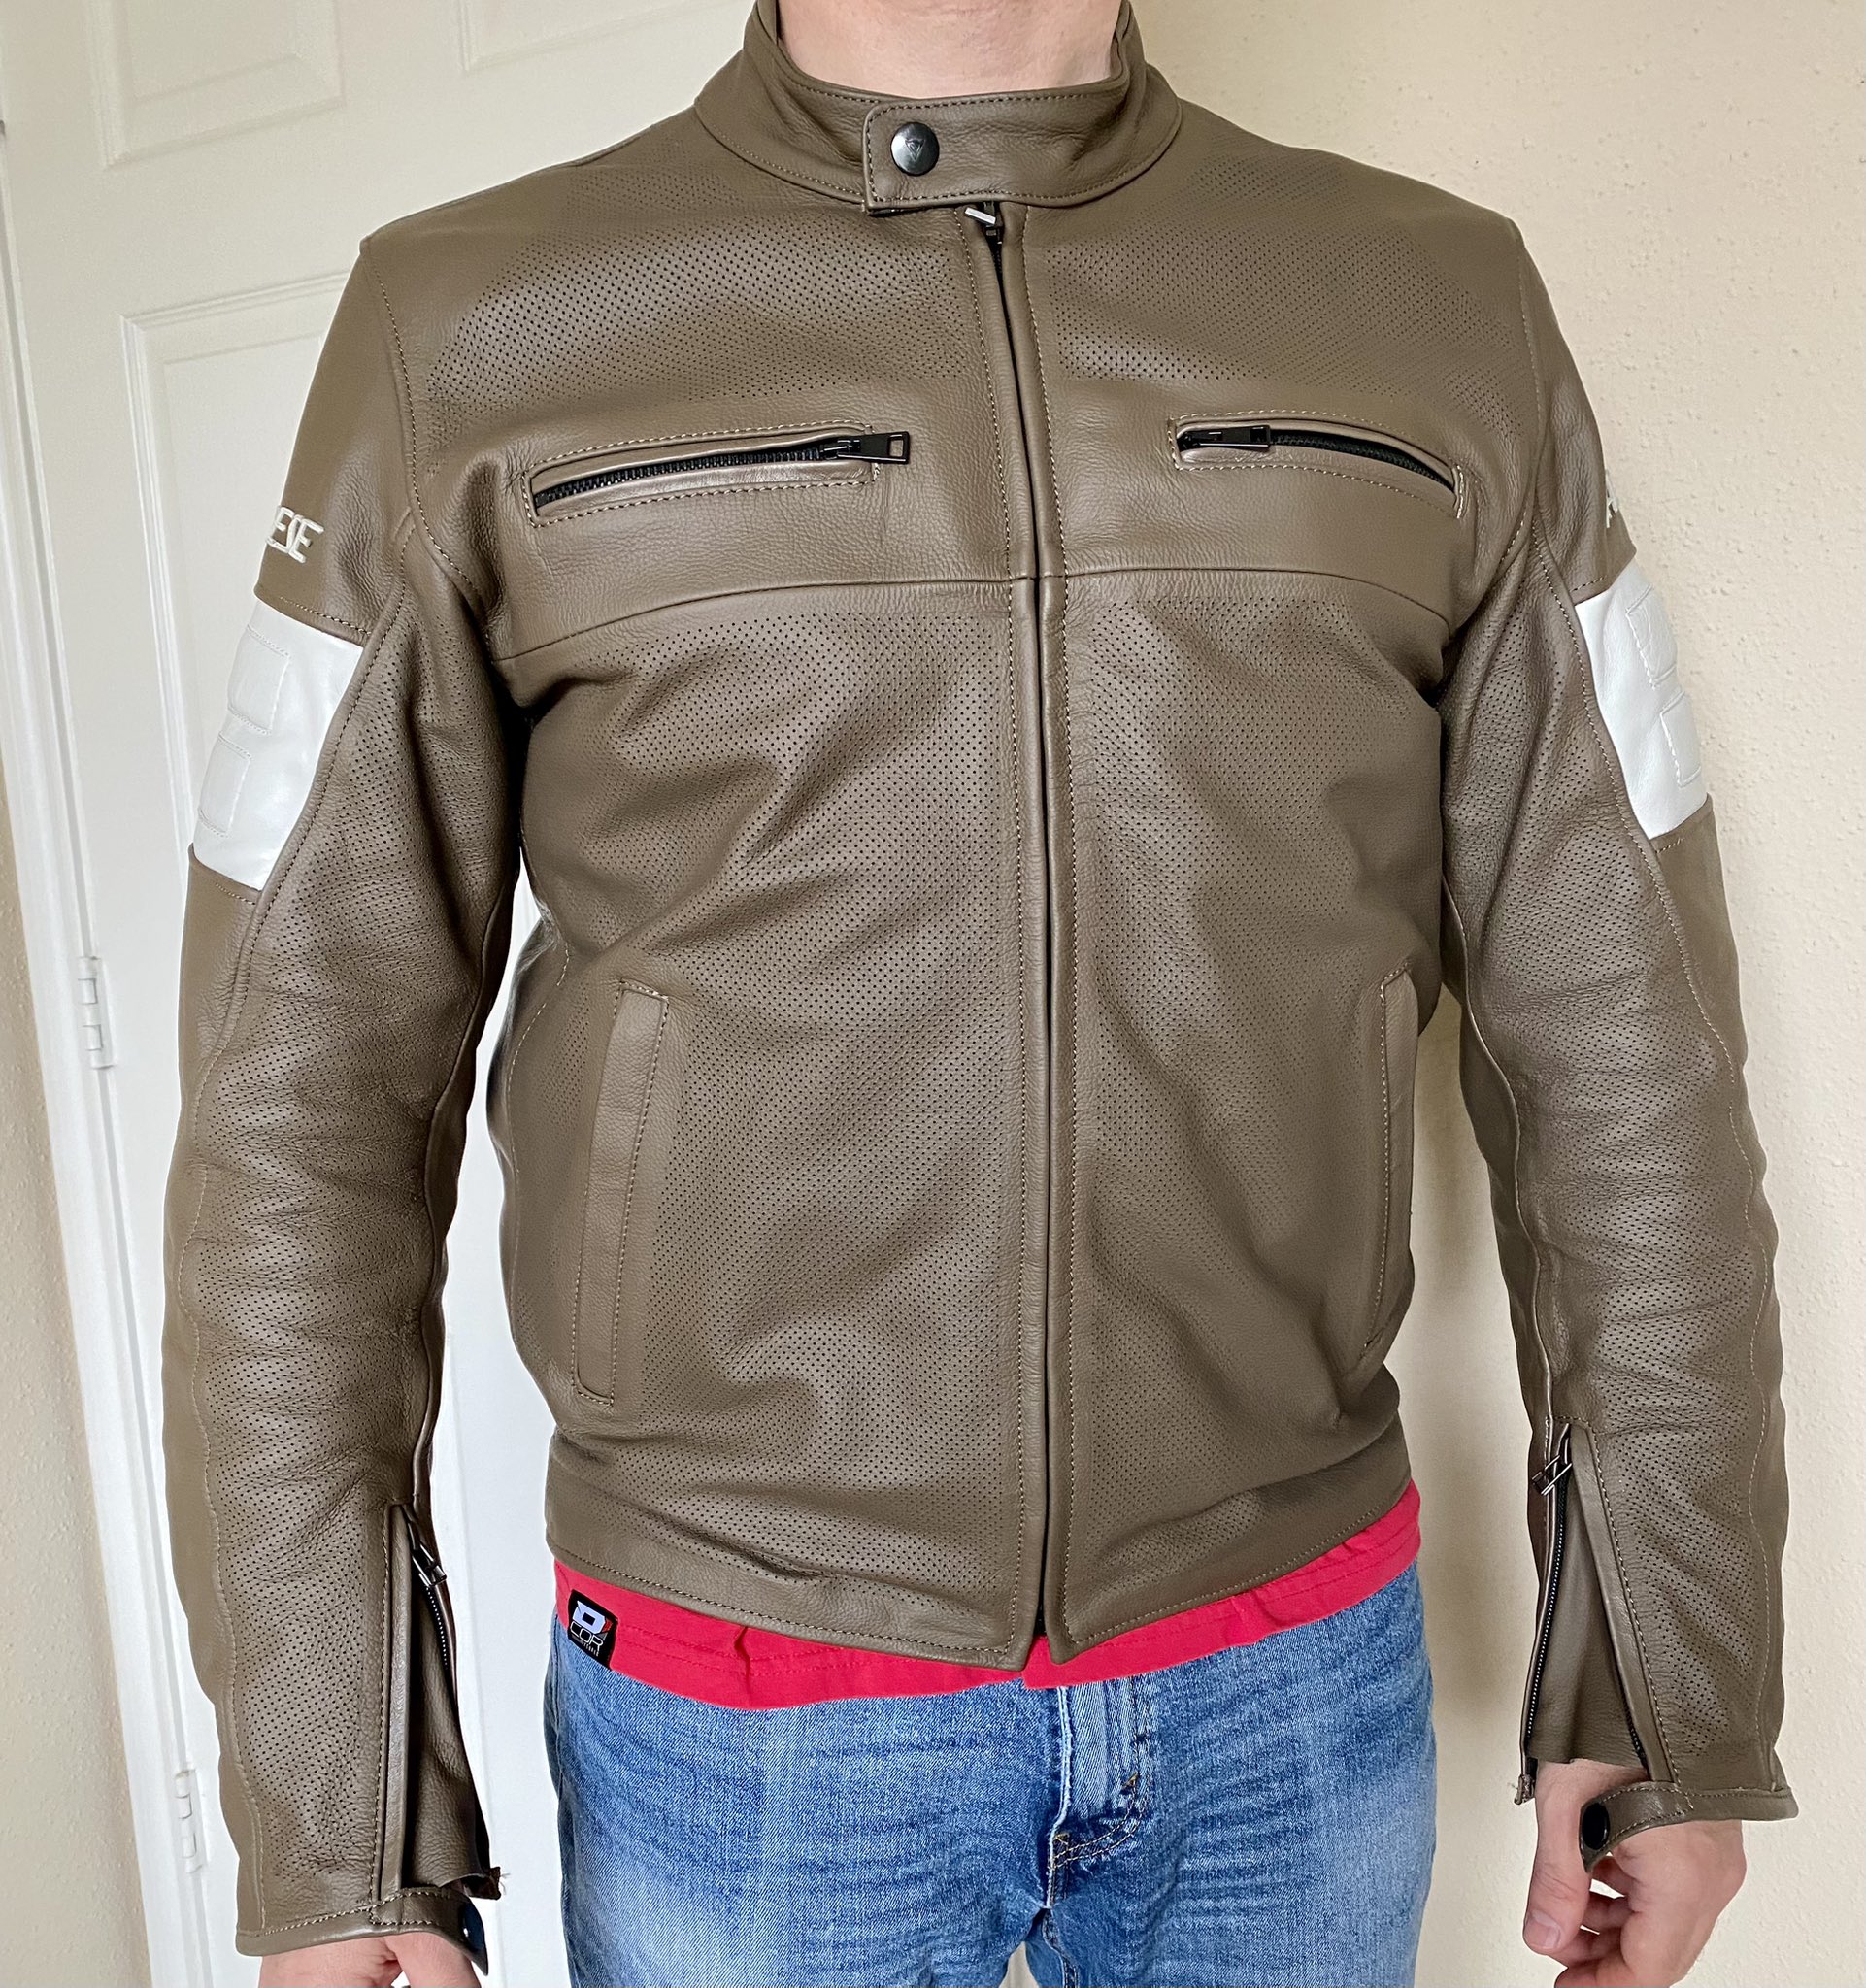 brugt fintælling Skabelse Dainese Perforated Leather Jacket - Size 54 | BMW R18 Motorcycle Forum